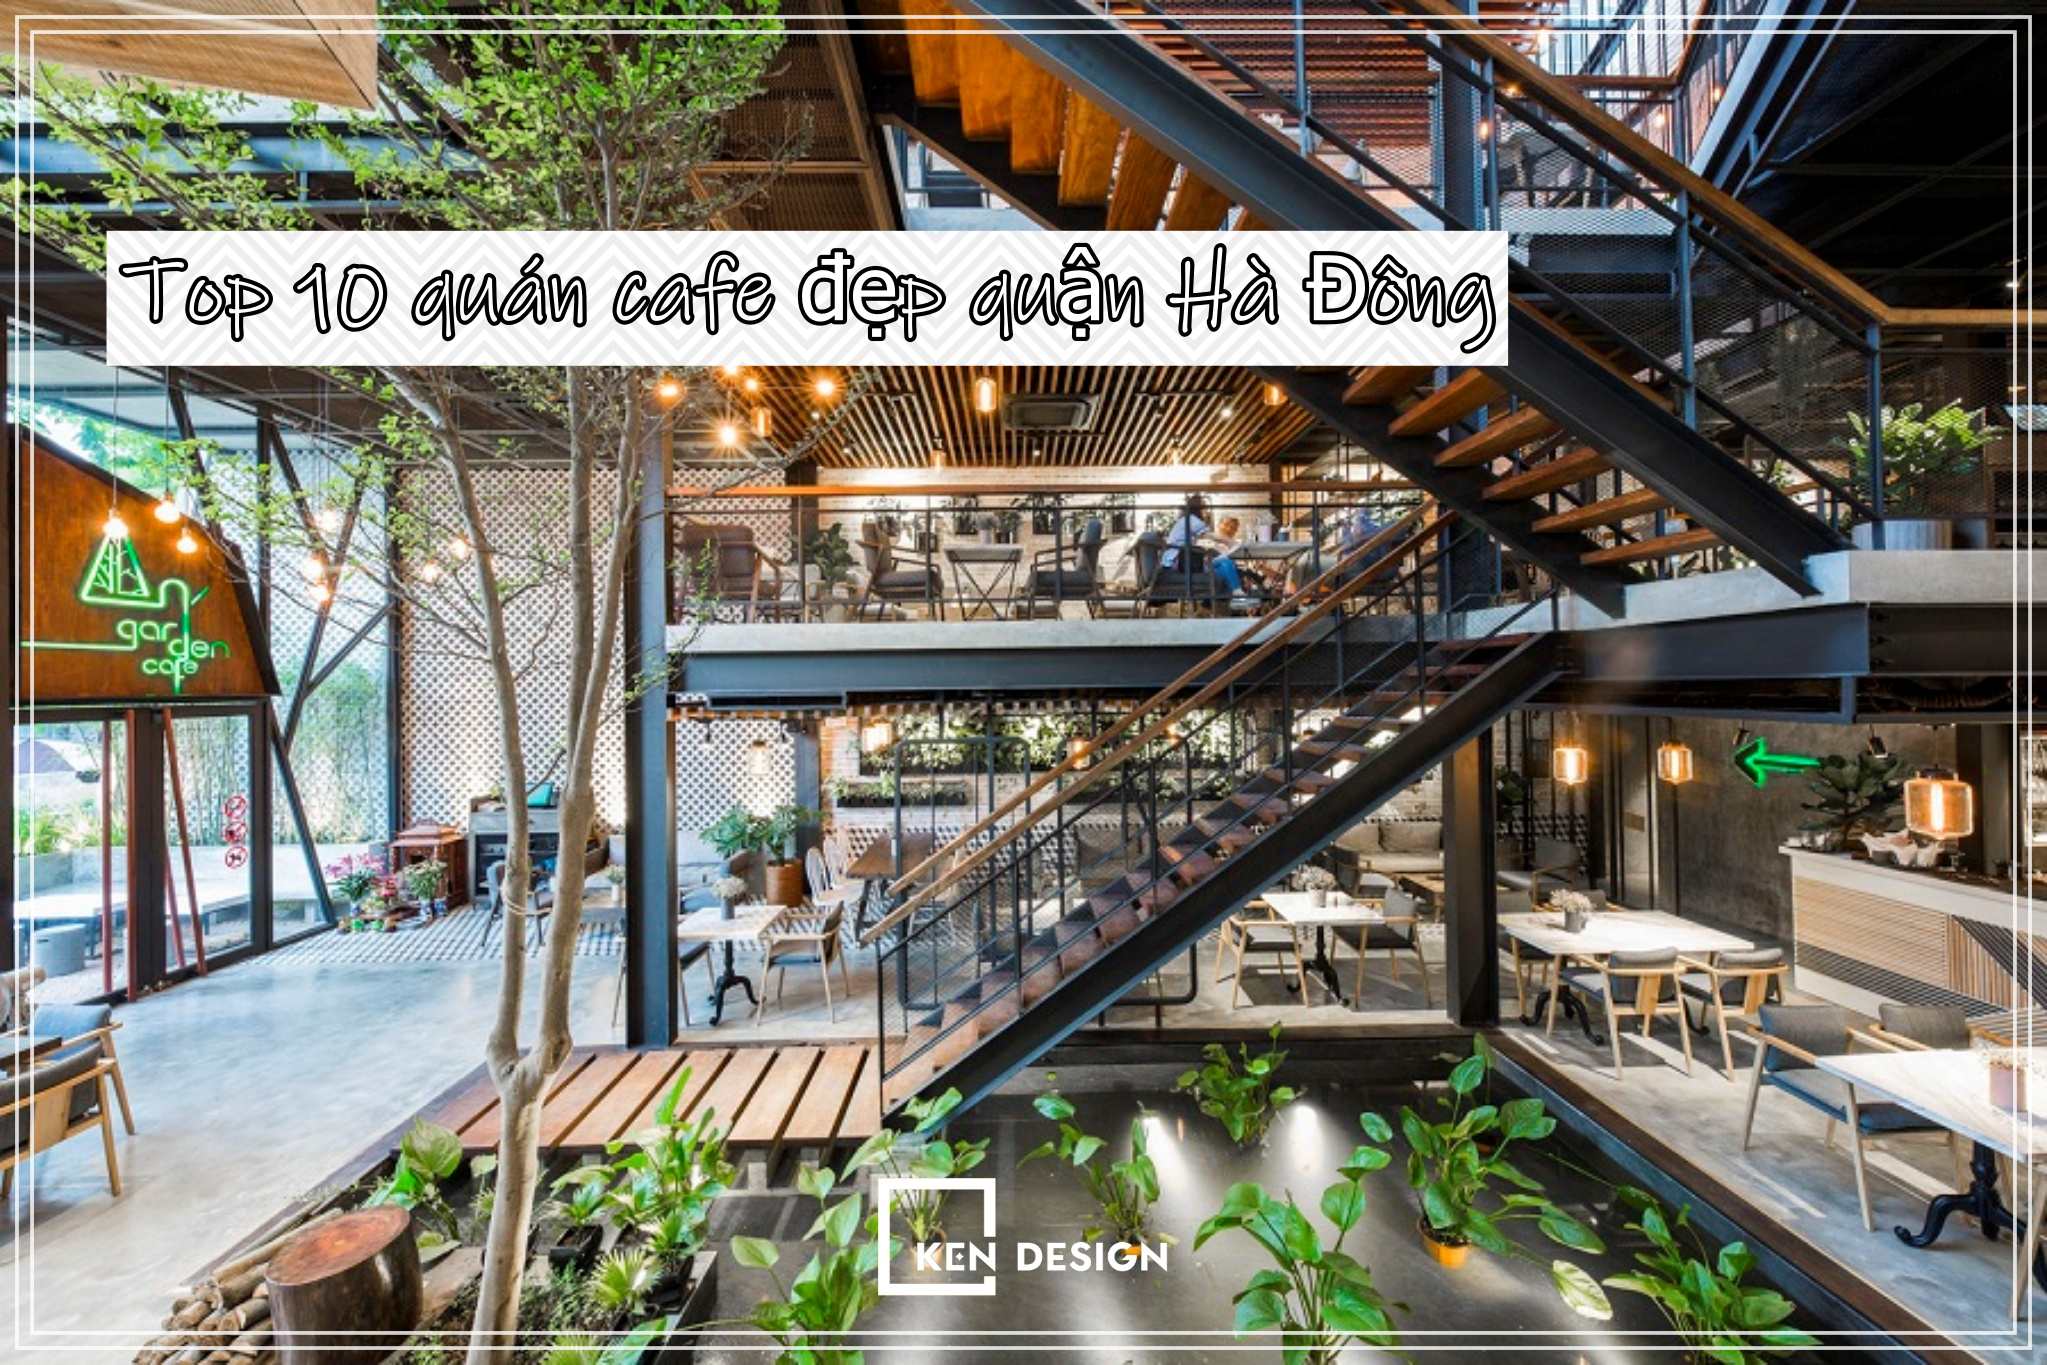 Khám phá Top 10 quán cafe đẹp quận Hà Đông với view sống ảo siêu xịn